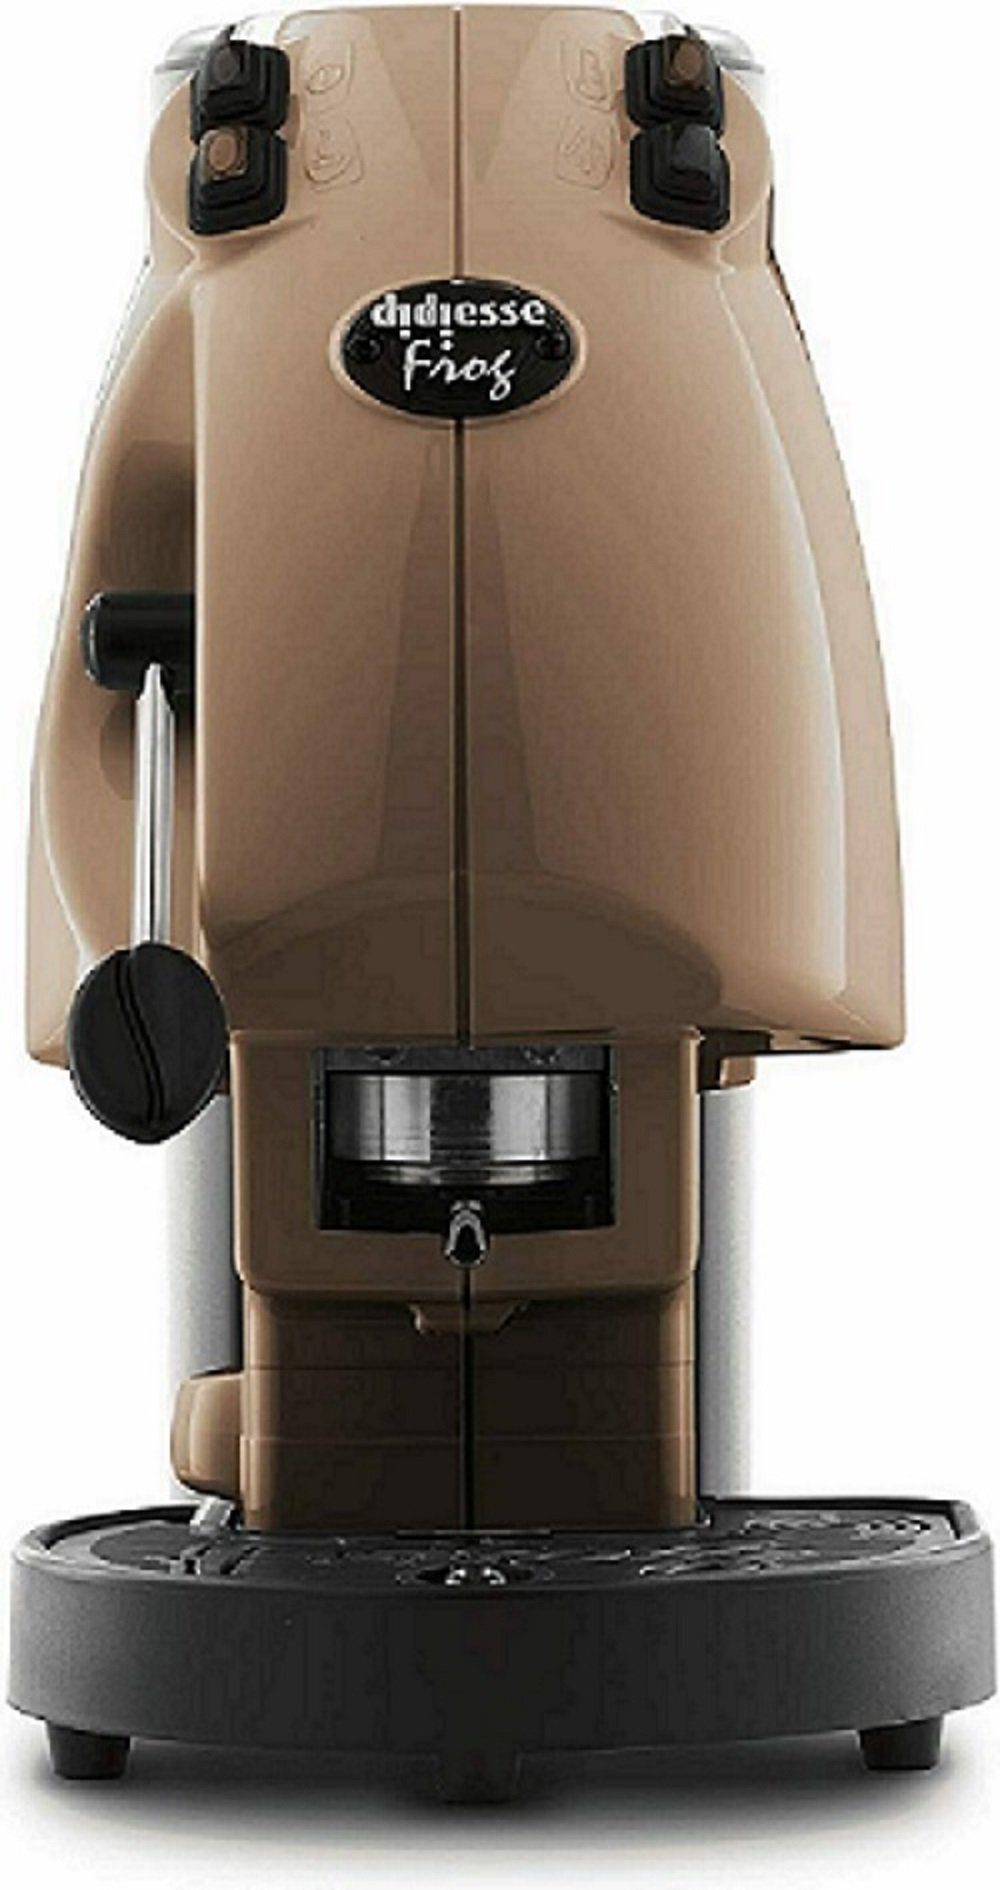 Braun hochwertige Premium Kaffeepads Philips je 1,5 INKLUSIVE 3 Didiesse für Espressomaschine, Metalldosen 20 Senseo Kaffeedose Paddose Revolution, l Frog